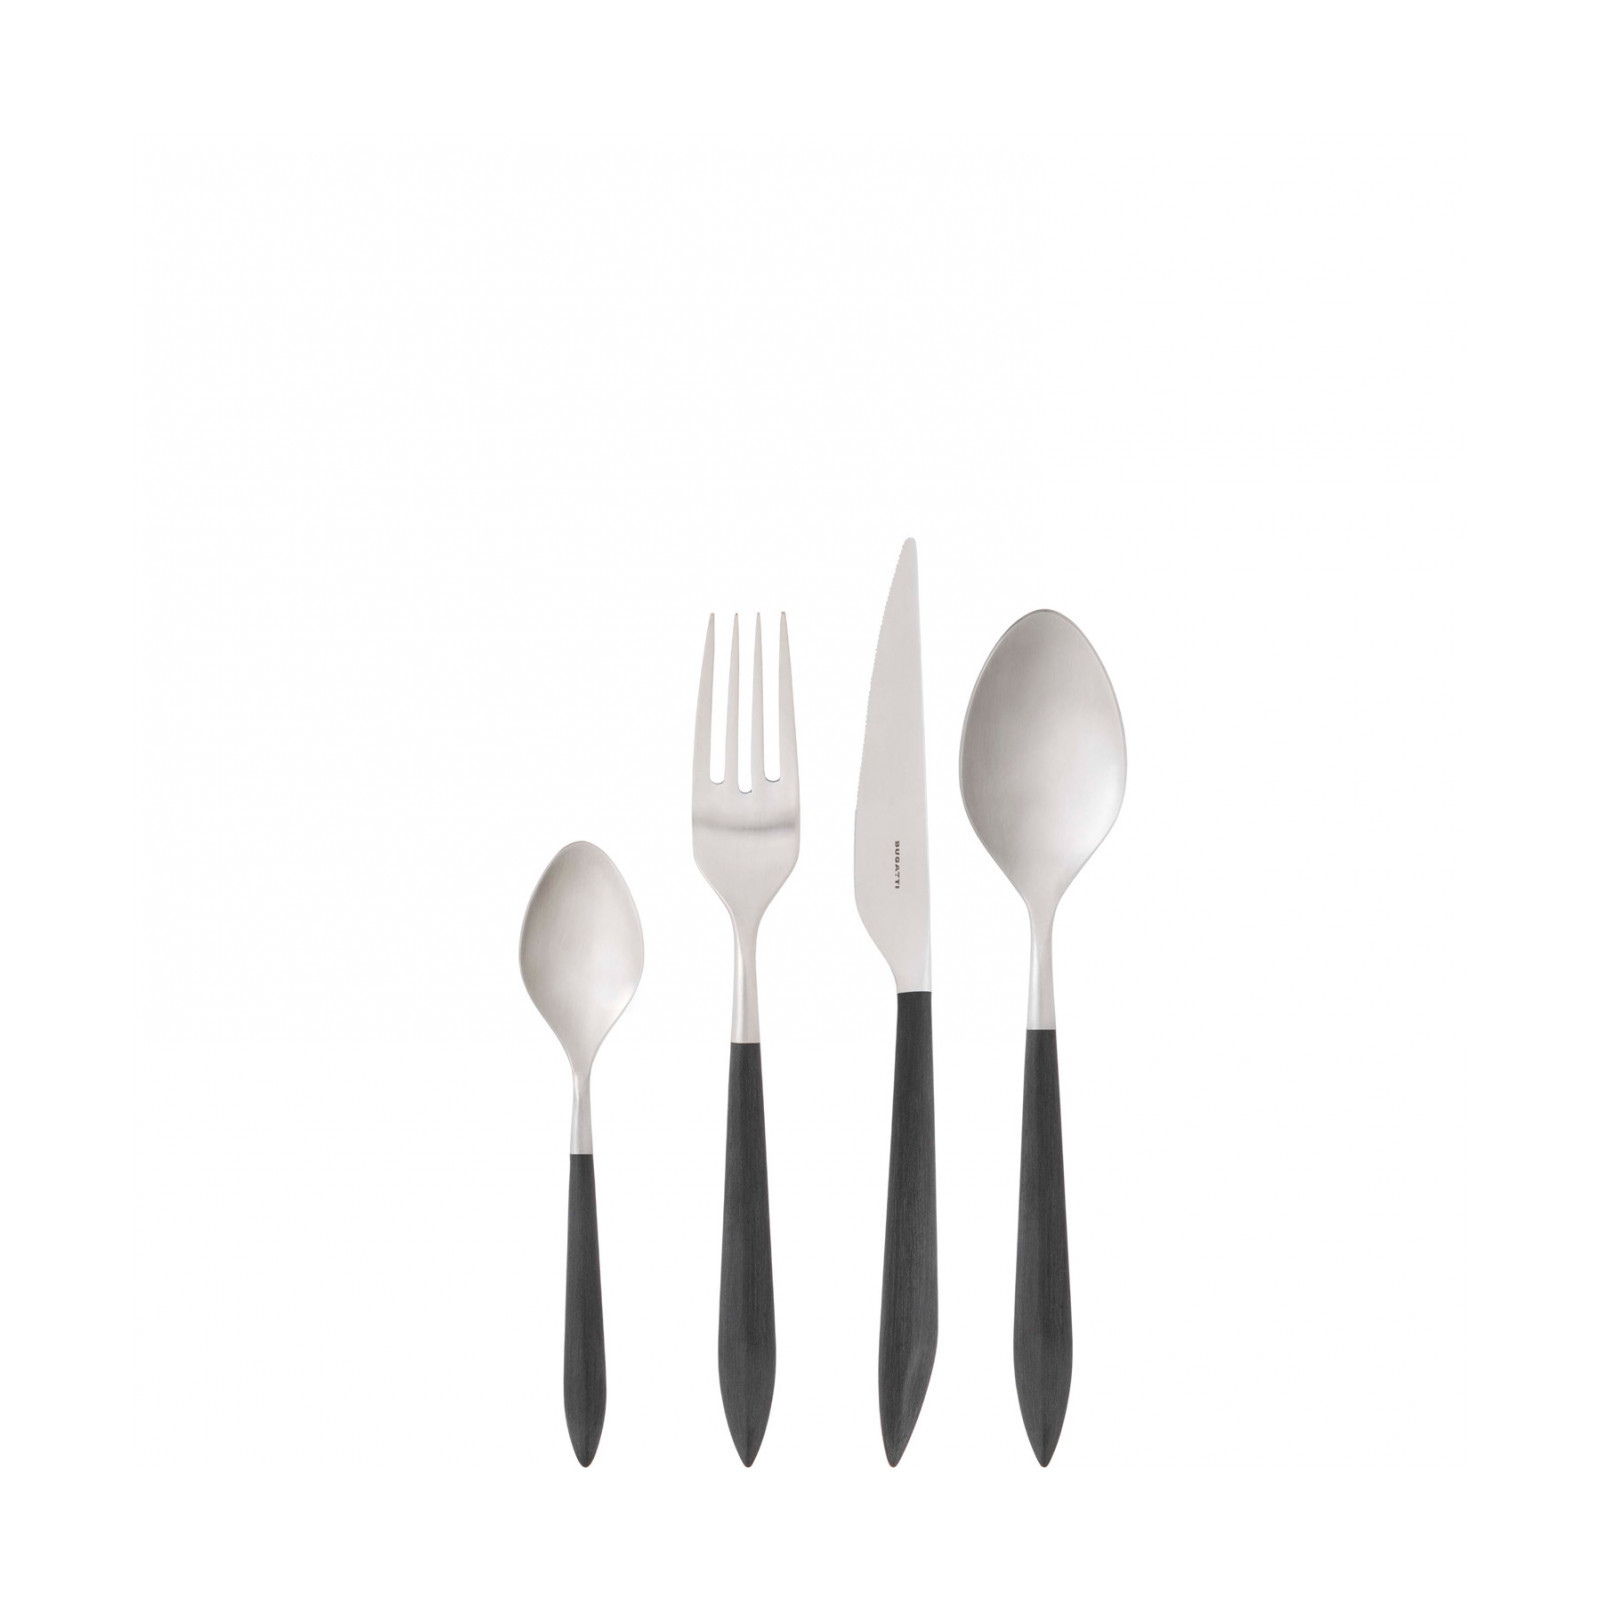 Bugatti - Designer cutlery, kitchen and accessories home appliances small